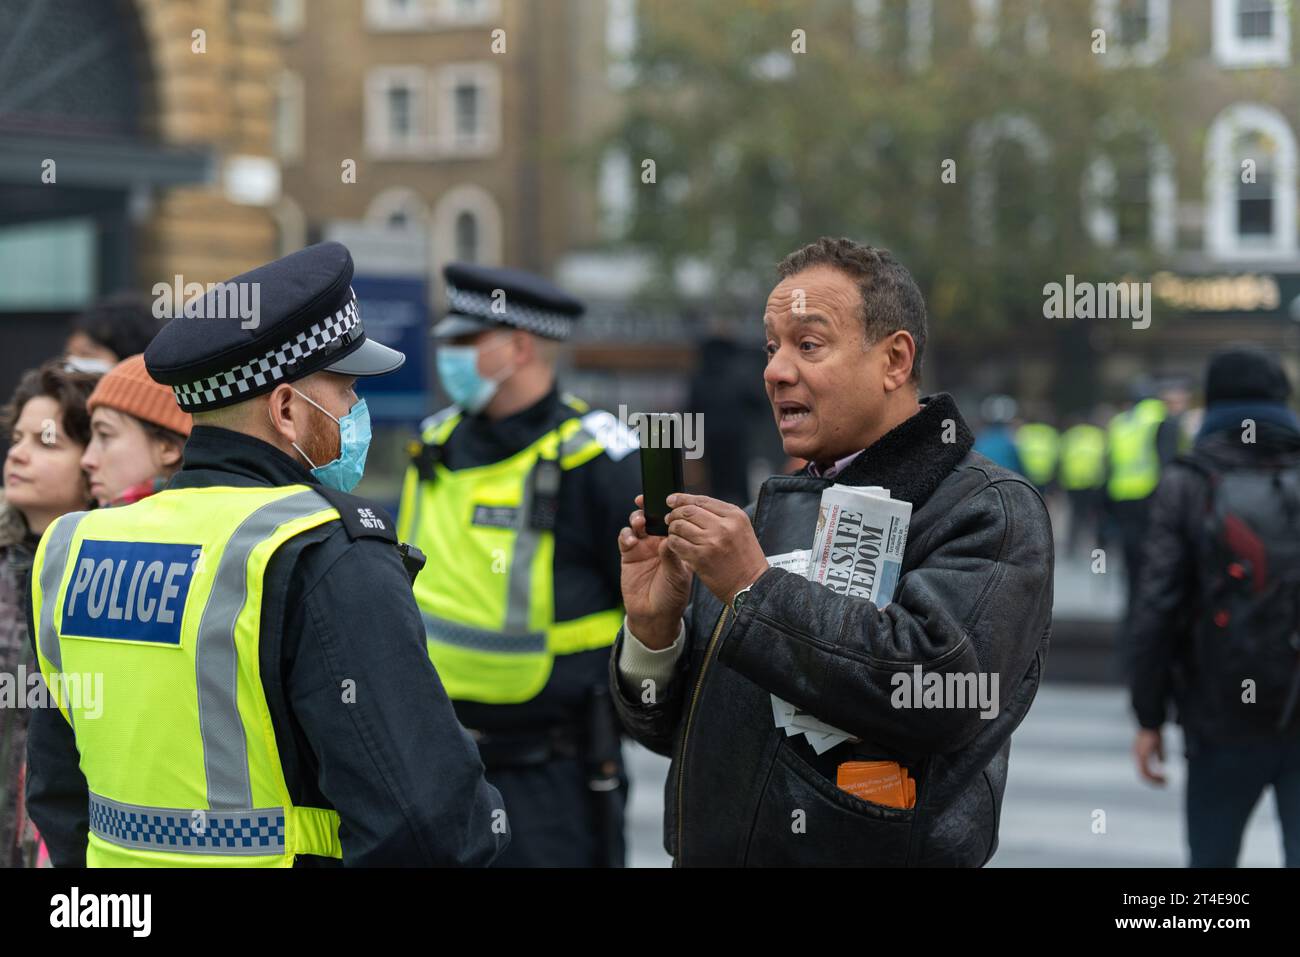 Personne filmant un officier de police lors d'une marche de protestation anti-confinement contre le coronavirus COVID 19 à Londres, Royaume-Uni. Enregistrement vidéo pour téléphone portable Banque D'Images